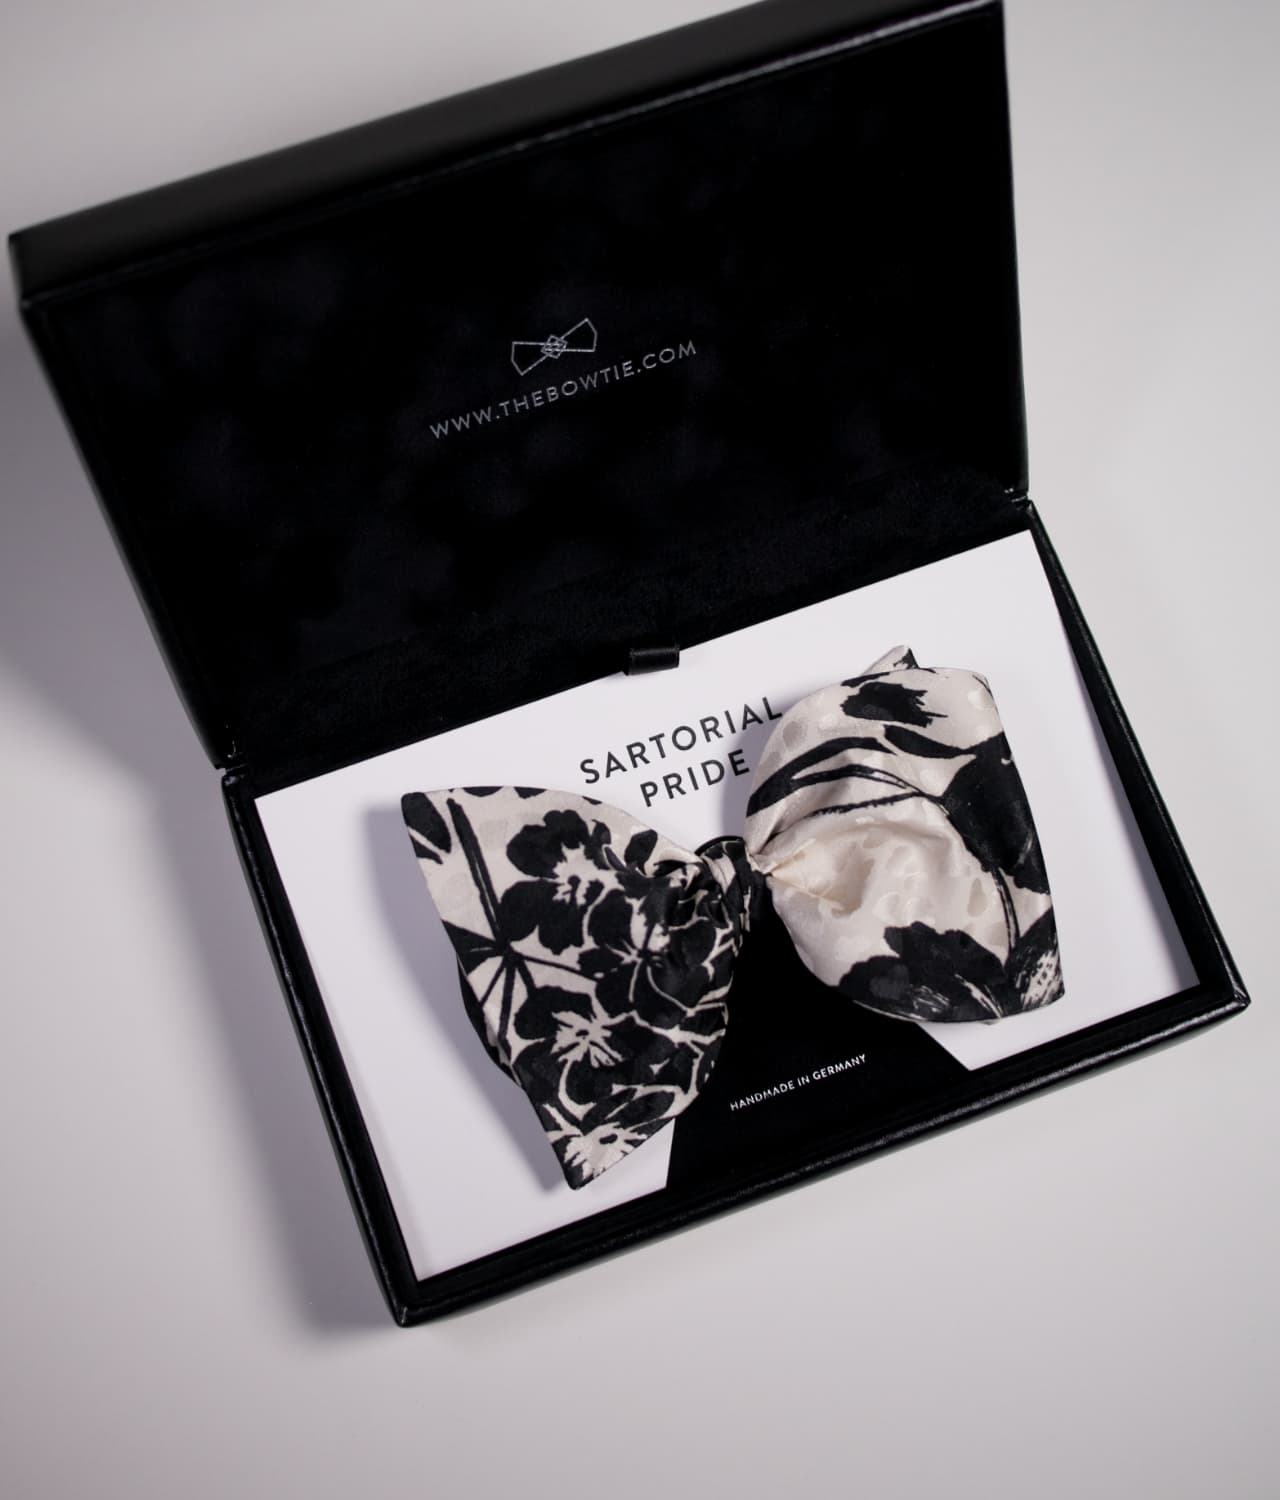 100% Silk - White Bow Tie - Floral Design - CEQ2